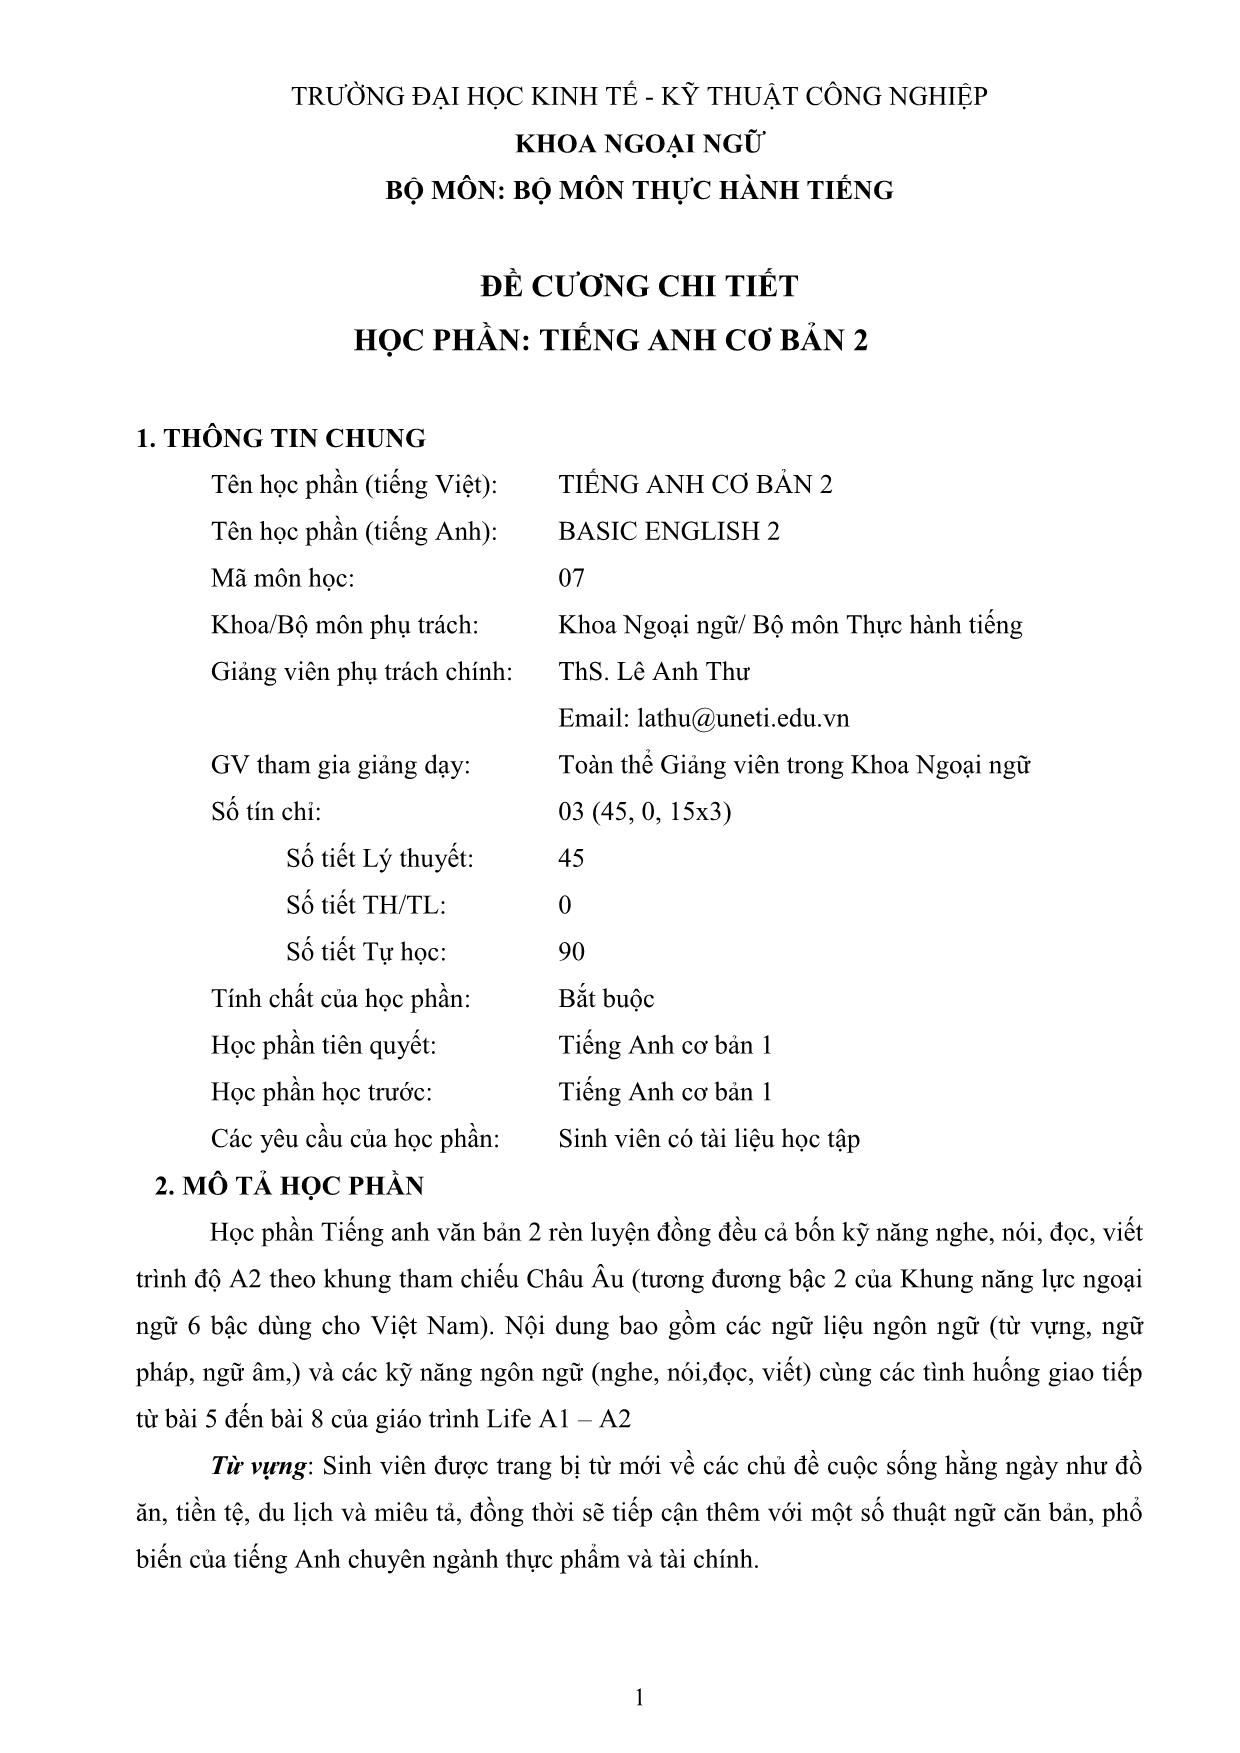 Đề cương chi tiết học phần Tiếng Anh cơ bản 2 trang 1